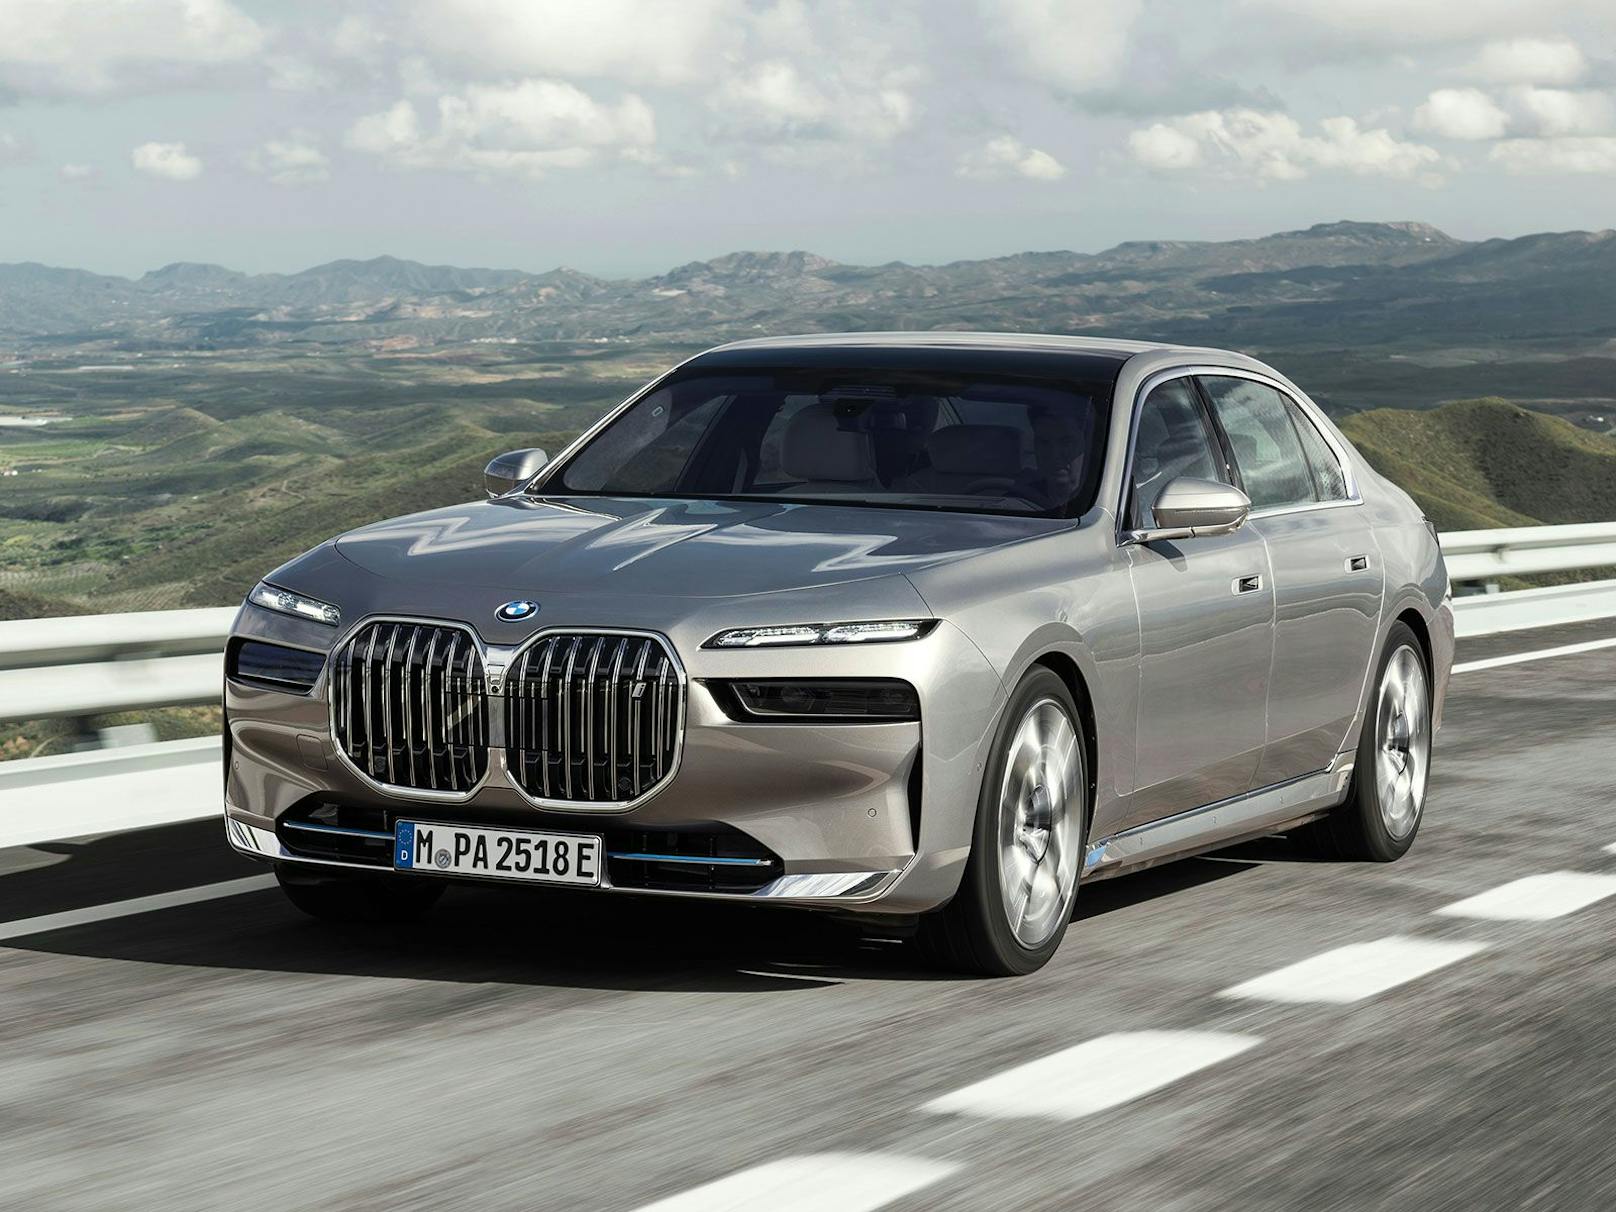 Das Design der neuen BMW 7er-Reihe wird wieder für viel Gesprächsstoff sorgen